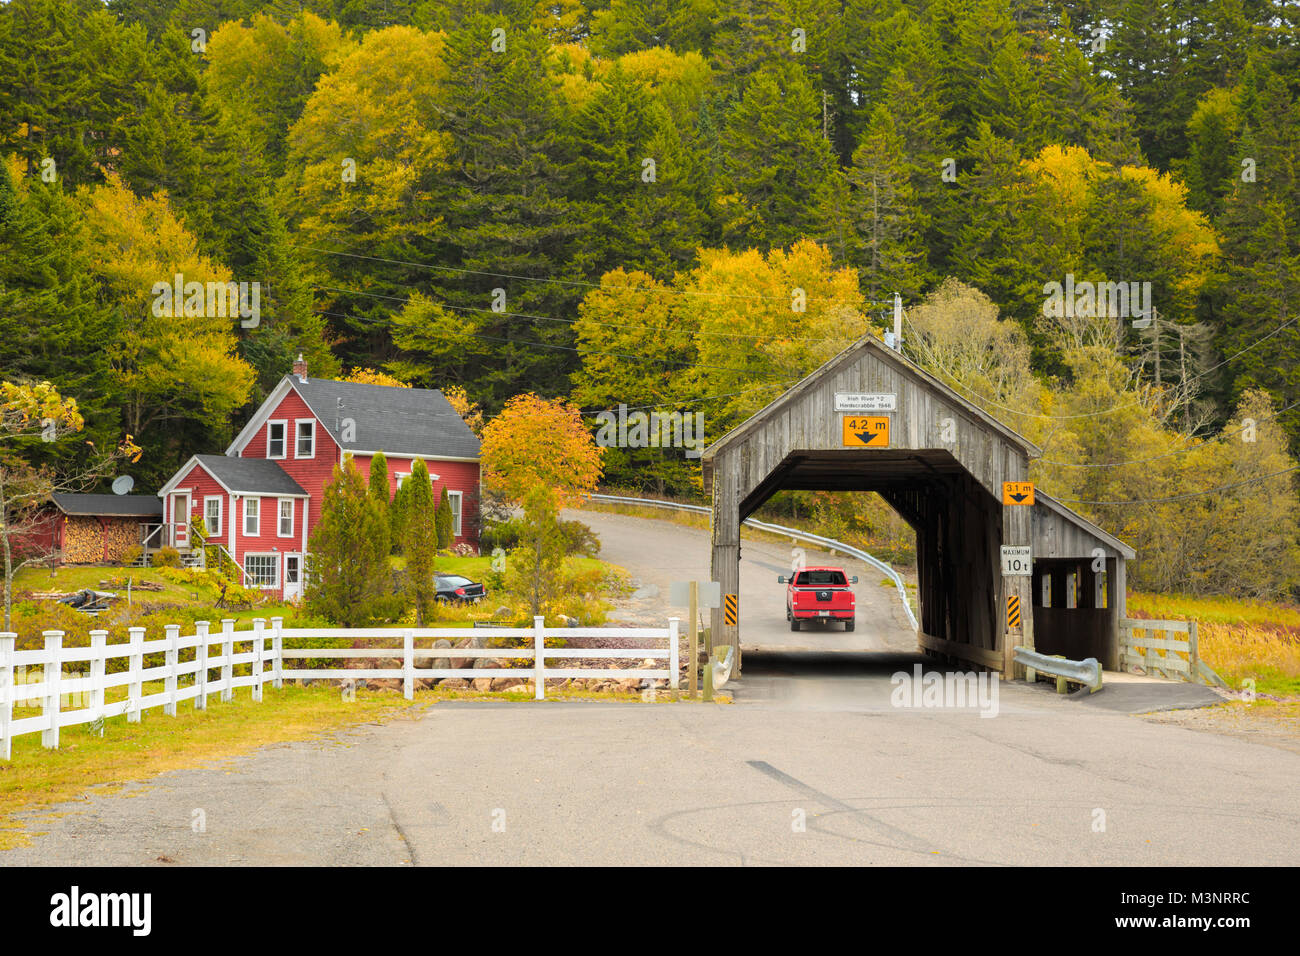 Les arbres d'automne jaune coloré pittoresque vieux pont couvert en bois surround par maison rouge rural St Martins Baie de Fundy, Nouveau-Brunswick Canada Banque D'Images